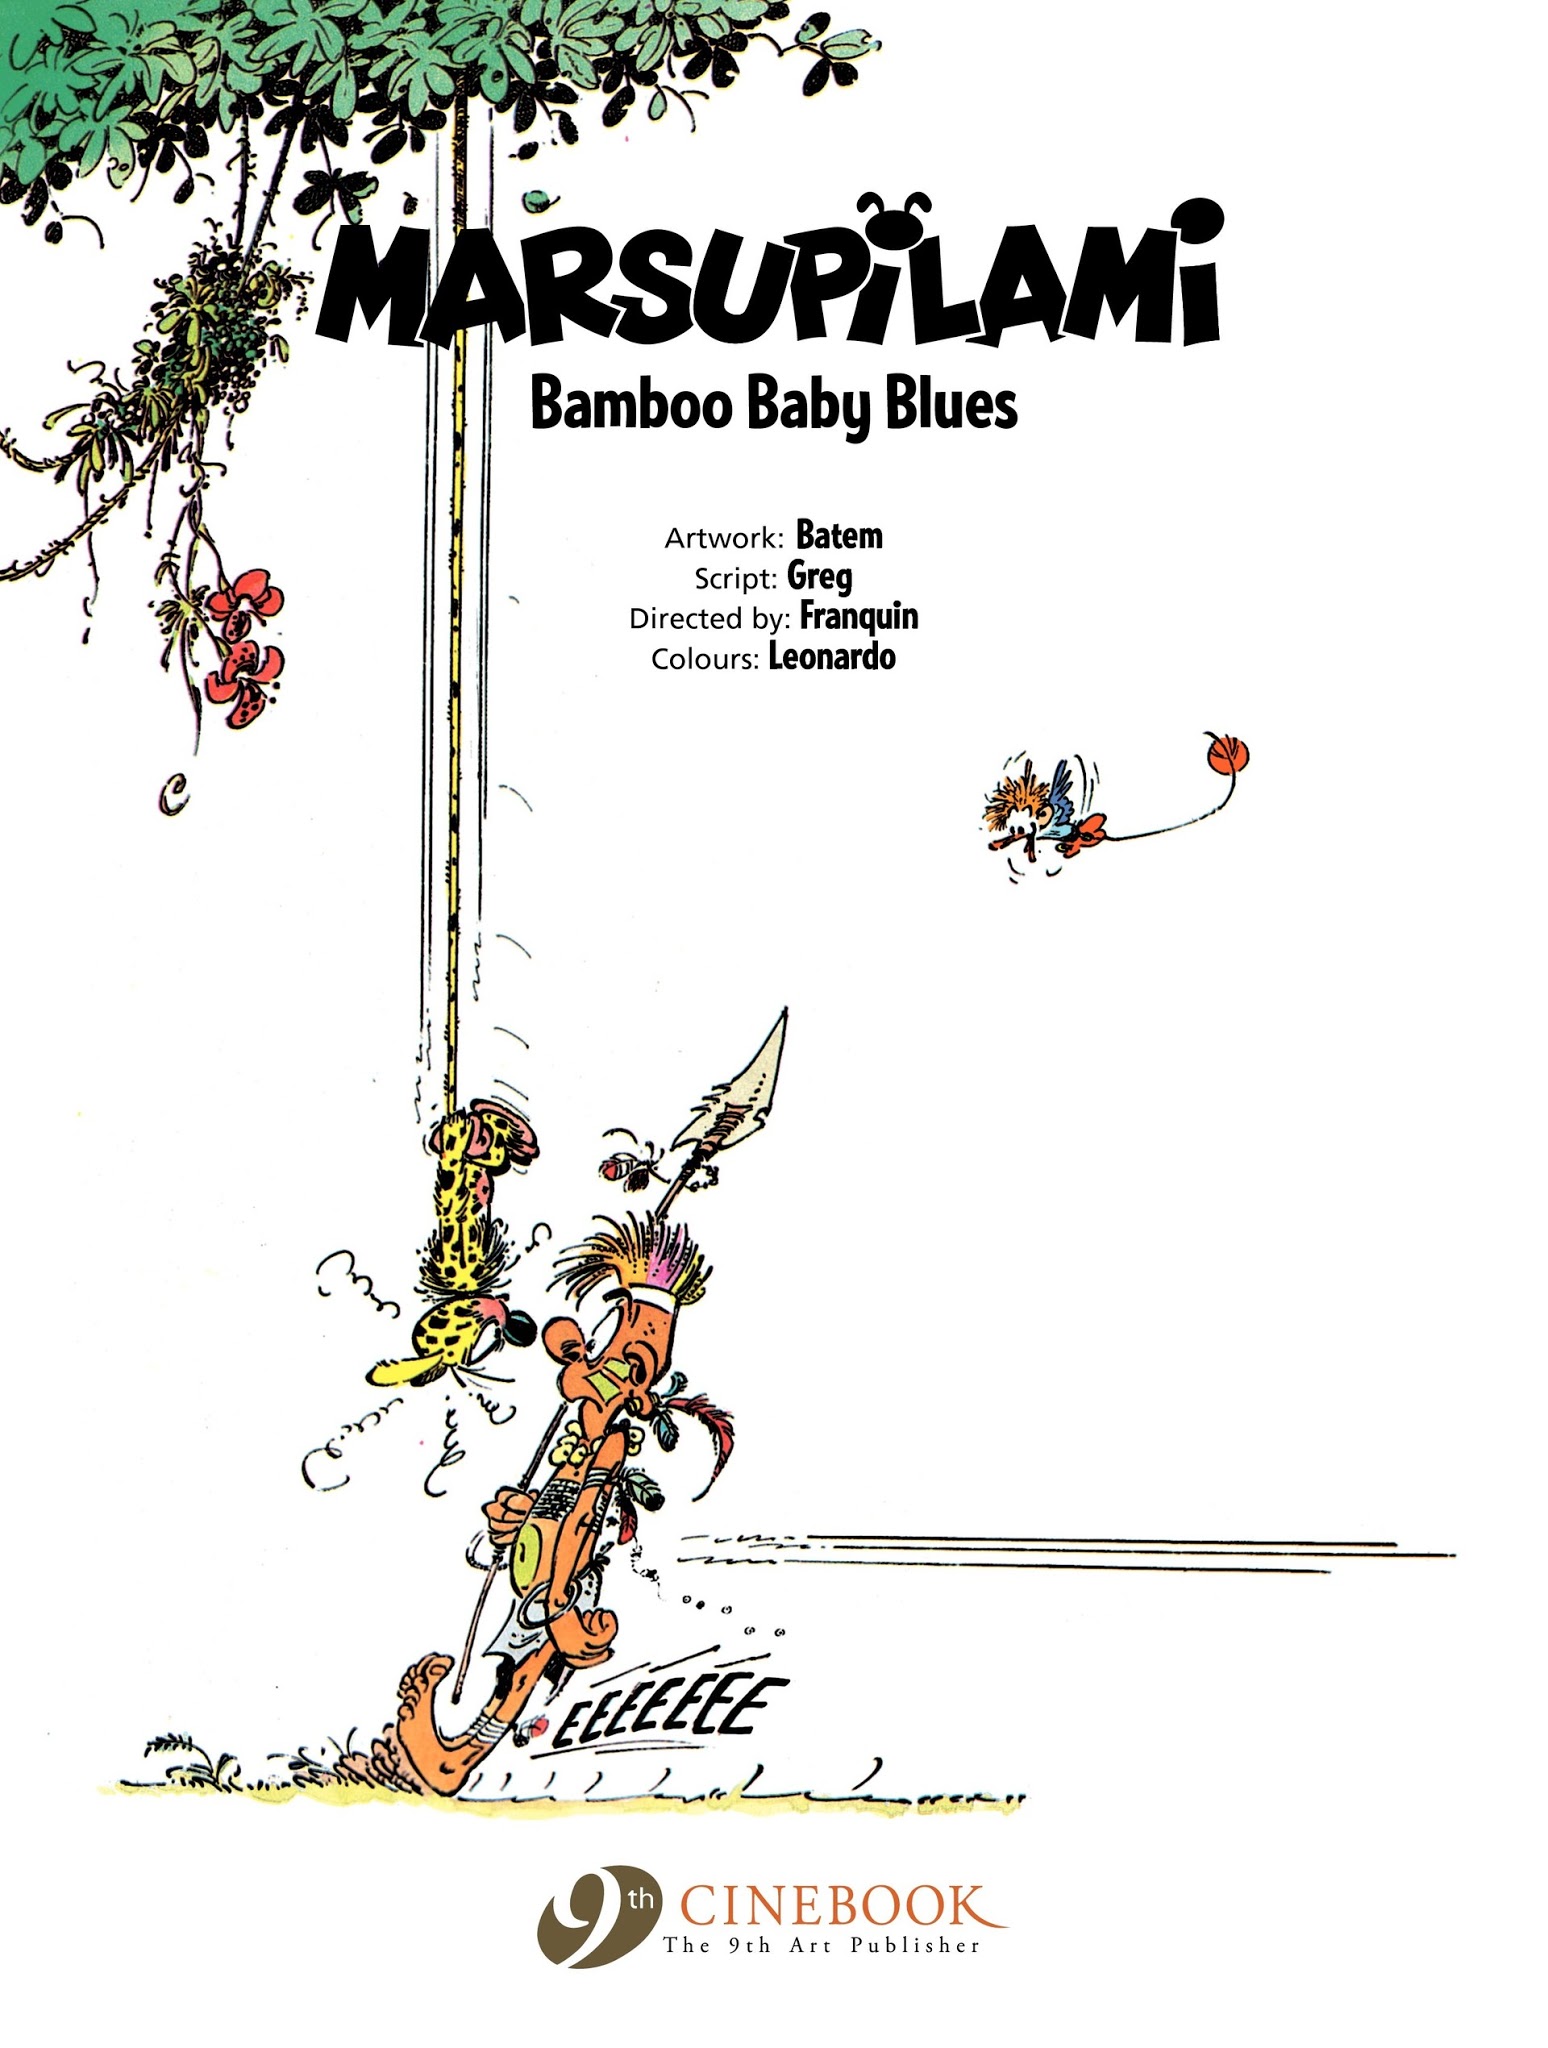 Read online Marsupilami comic -  Issue #2 - 3